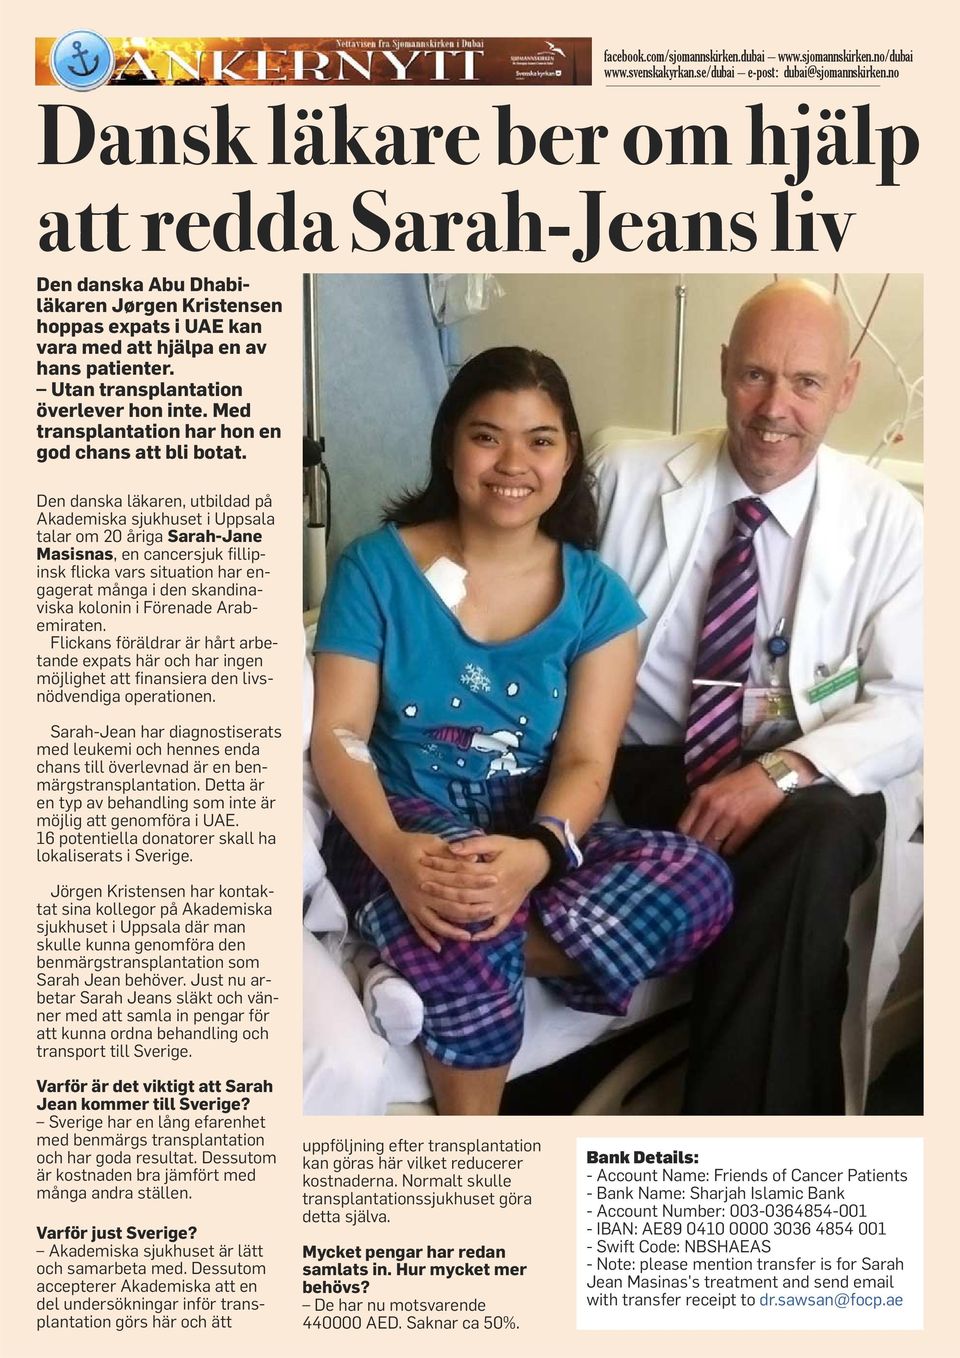 Den danska läkaren, utbildad på Akademiska sjukhuset i Uppsala talar om 20 åriga Sarah-Jane Masisnas, en cancersjuk fillipinsk flicka vars situation har engagerat många i den skandina - viska kolonin